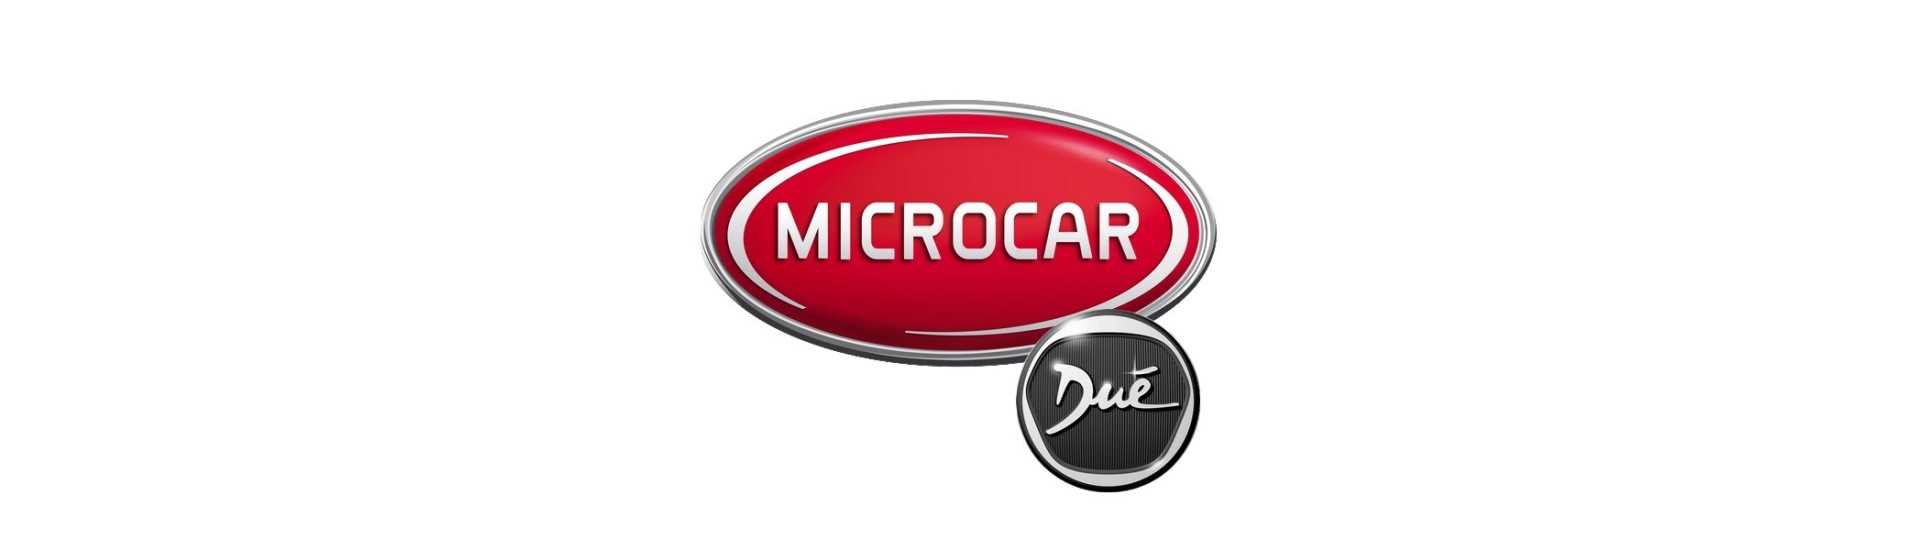 Vidro alto ao melhor preço do carro sem licença Microcar Dué